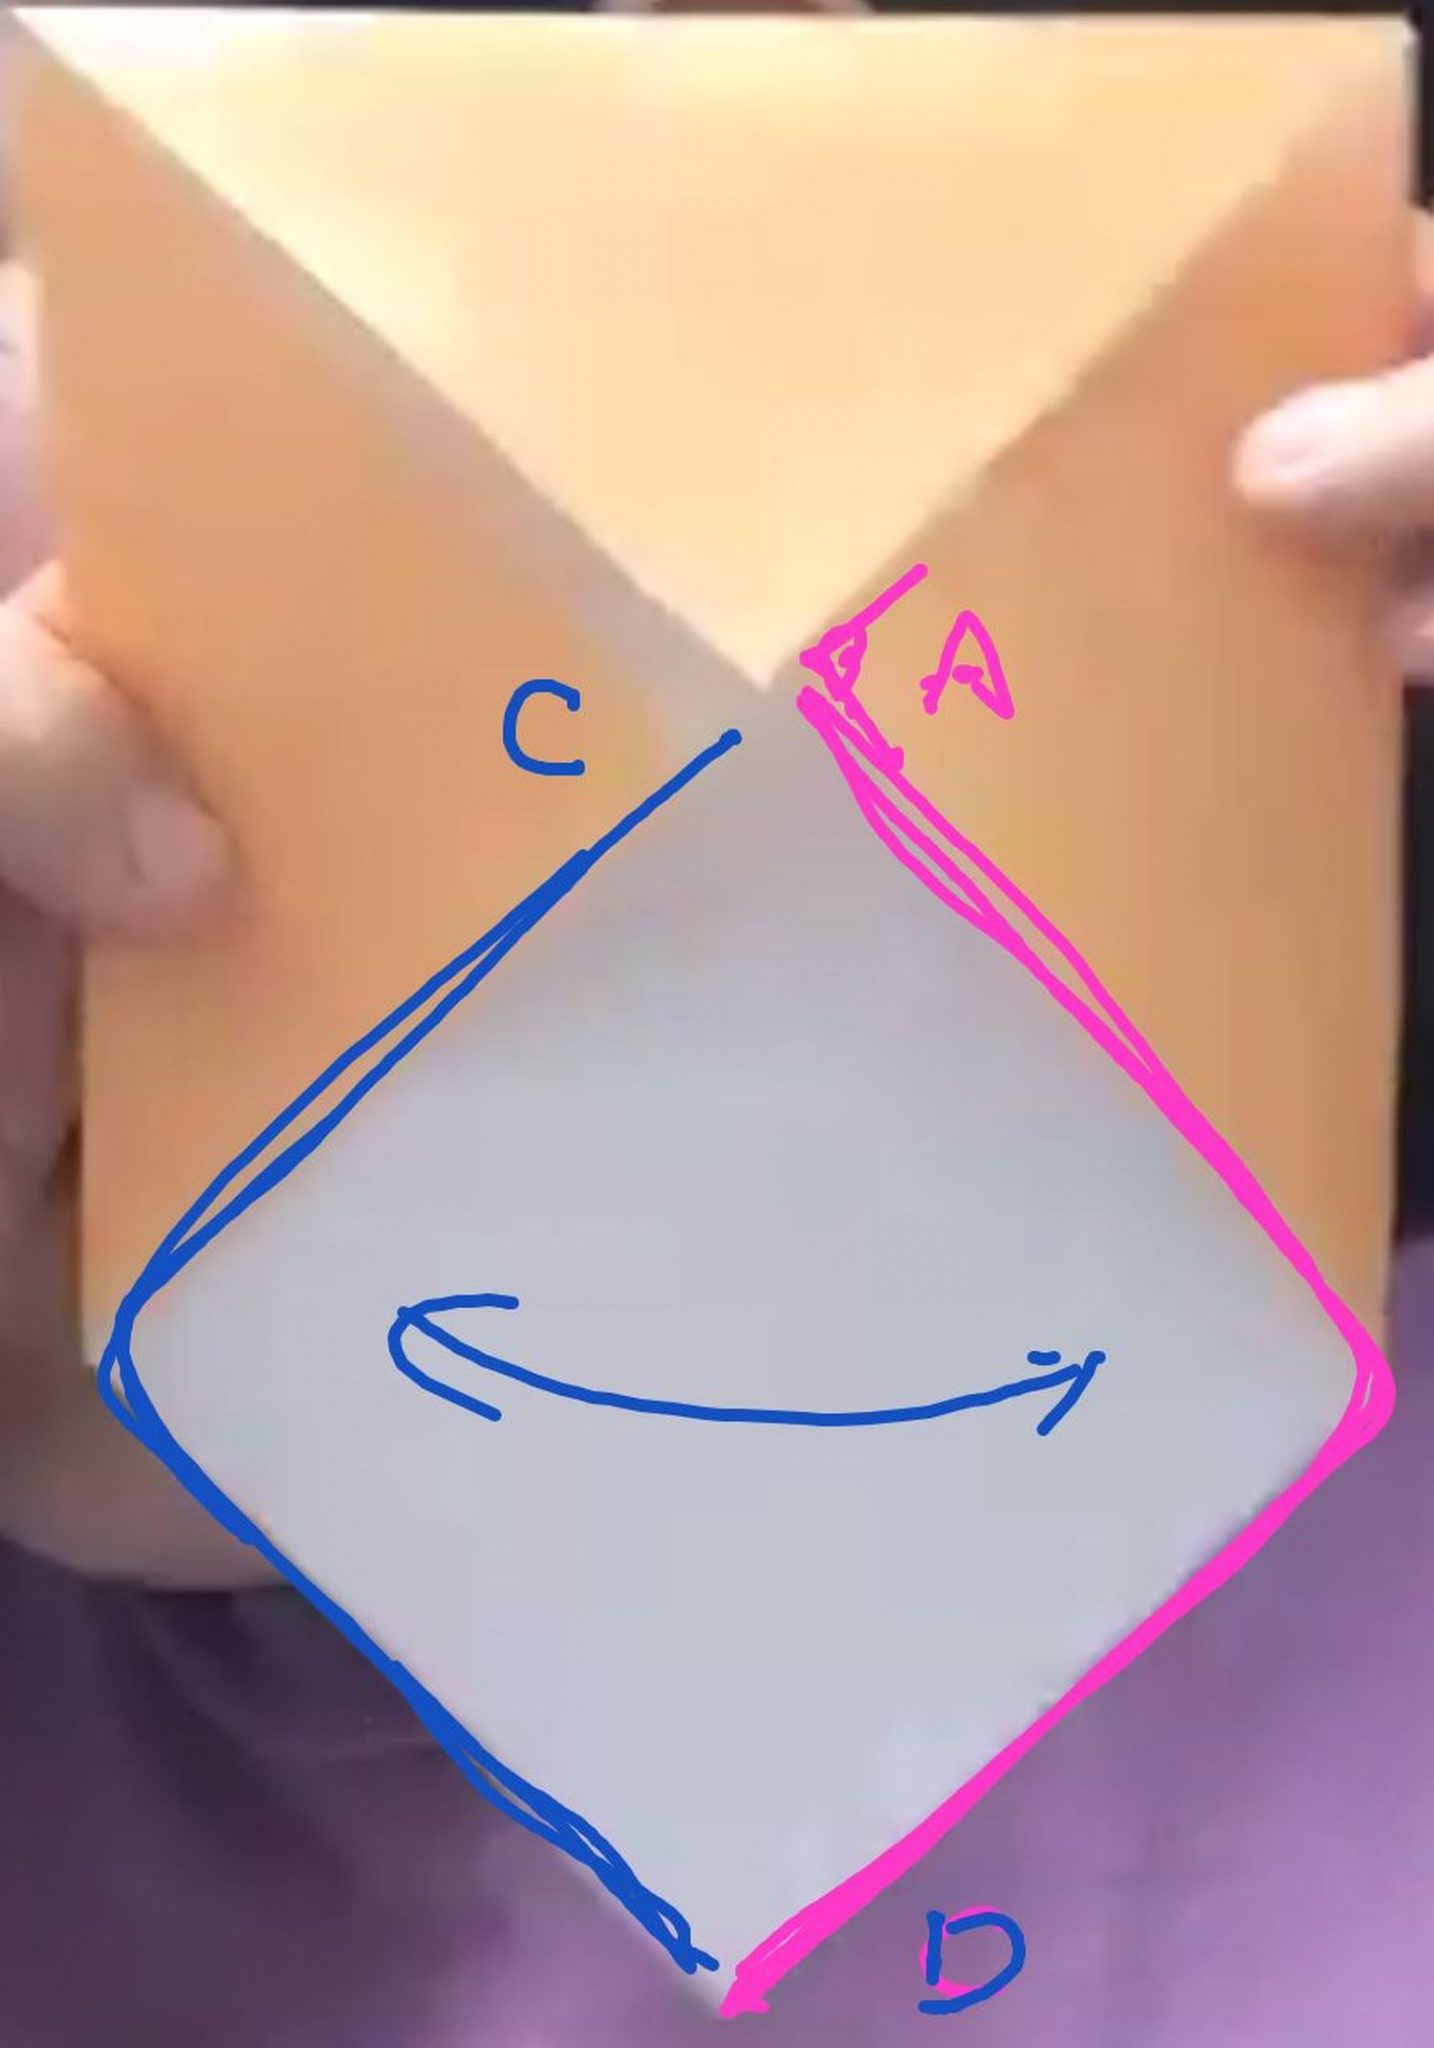 公立中高一貫が良く出題する折り紙問題をできるようにする方法